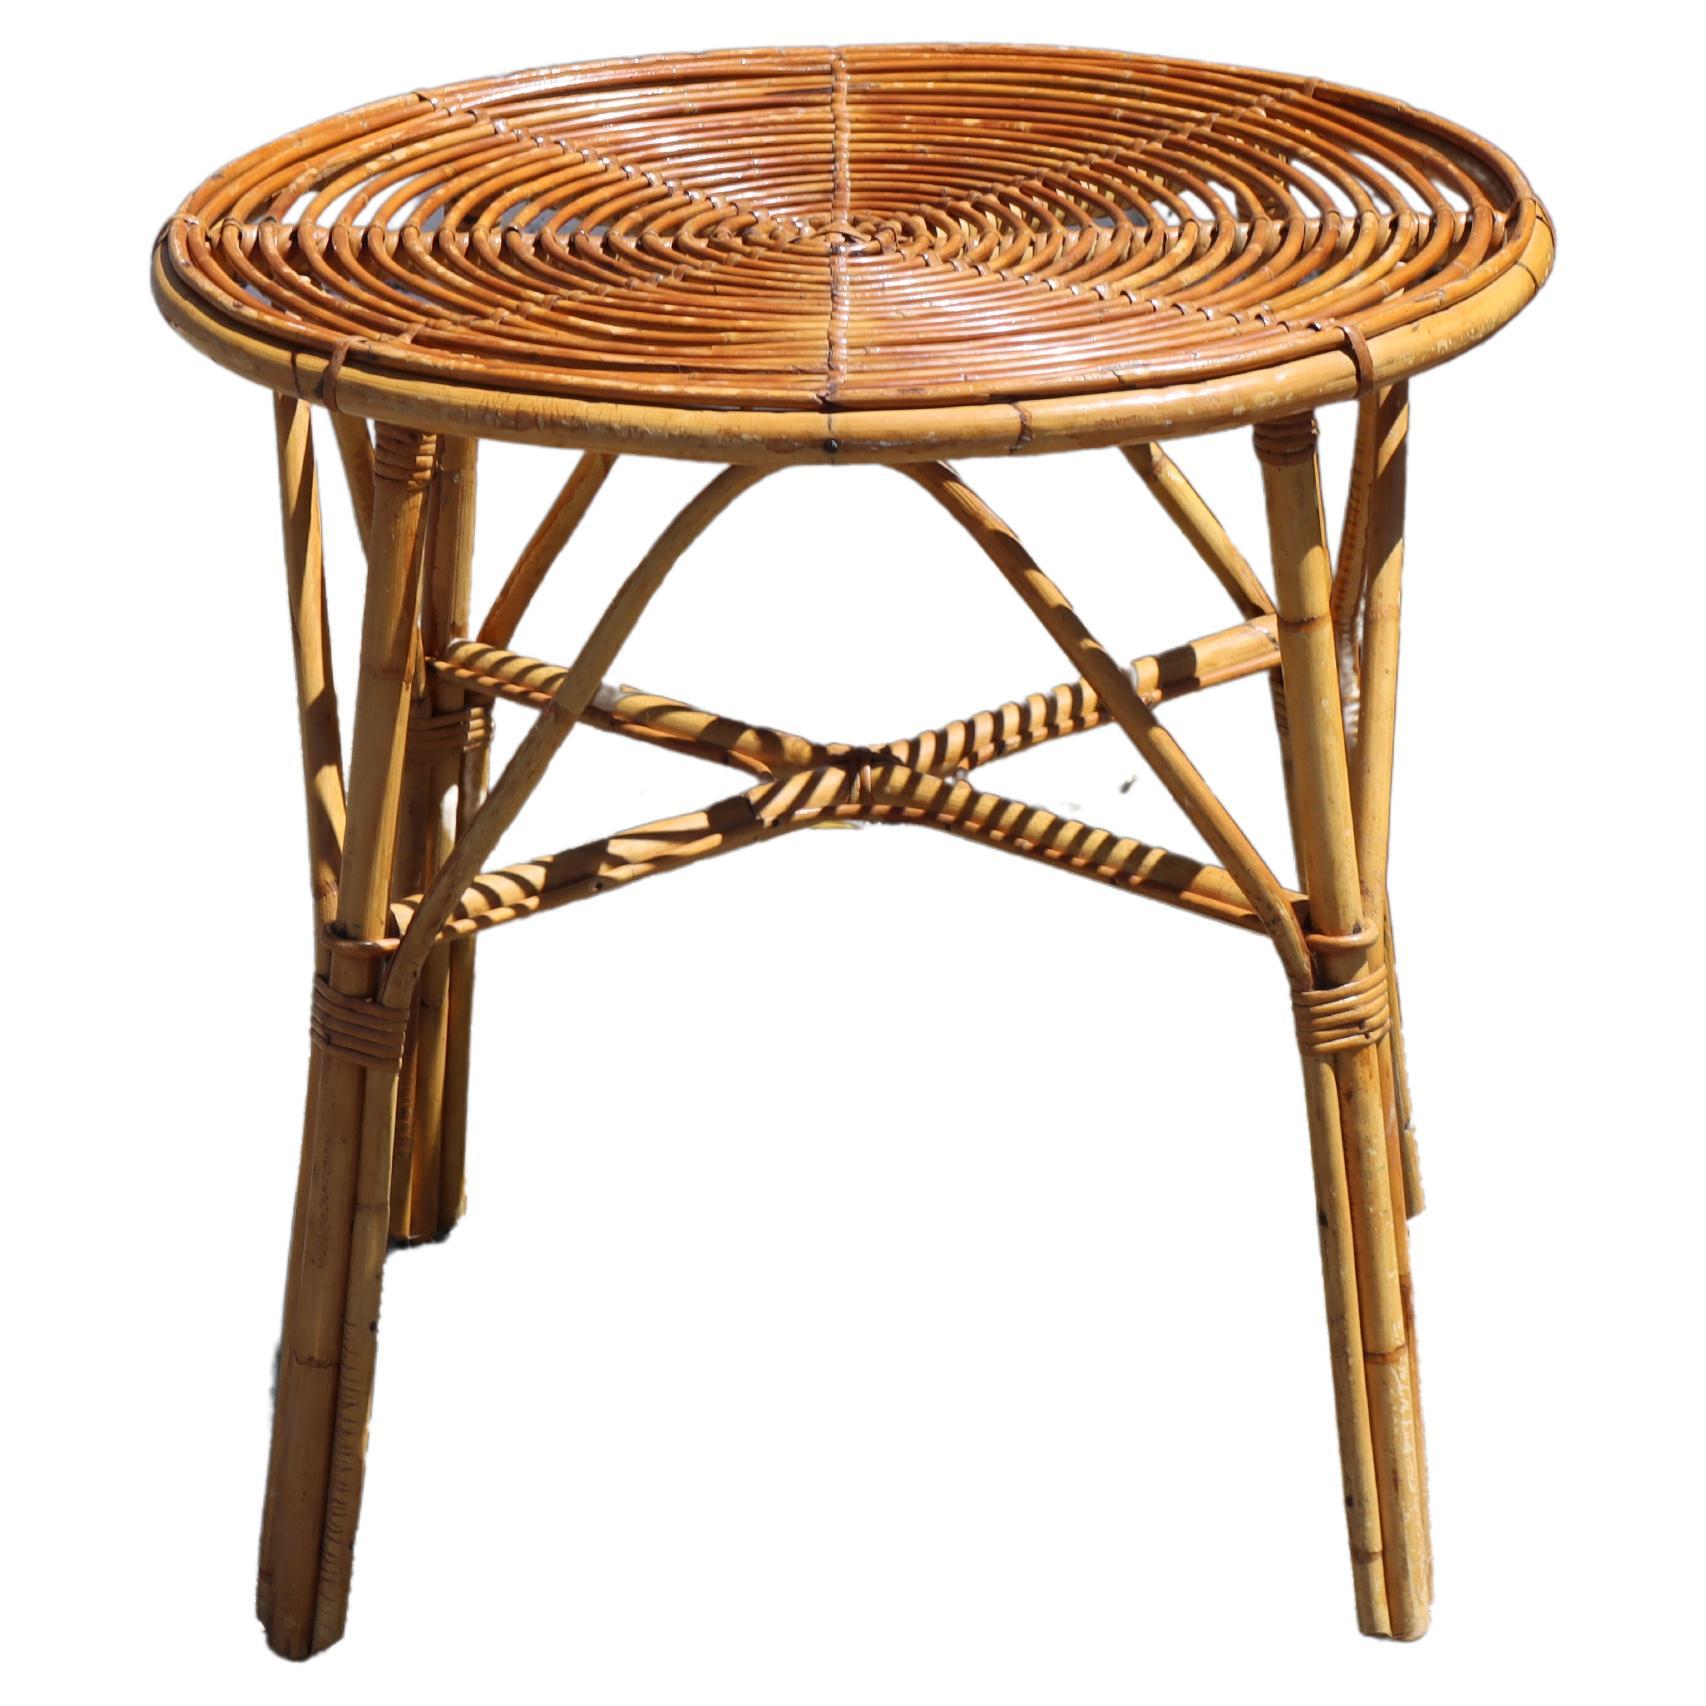 Table de salle à manger en bambou vintage française - Table d'appoint - Table basse - Table patio - années 70